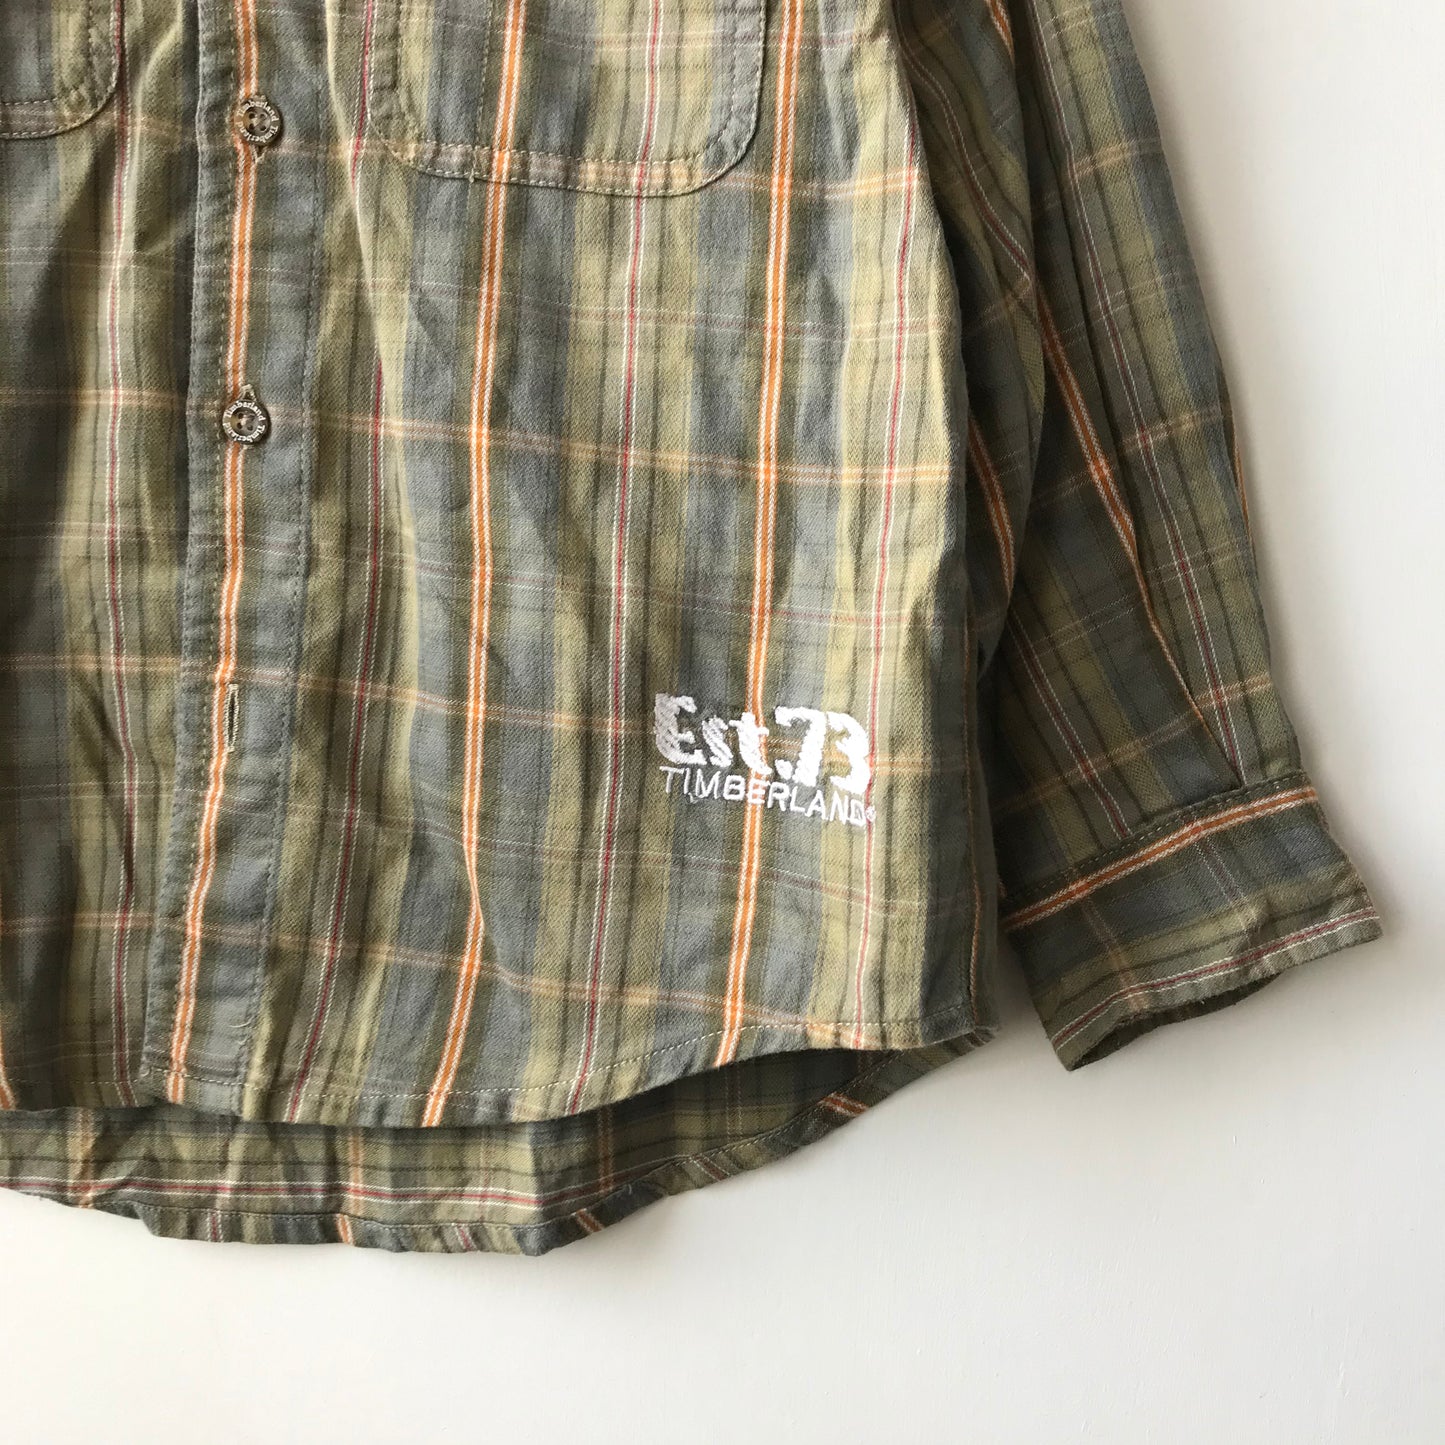 Shirt - Timberland - Age 5